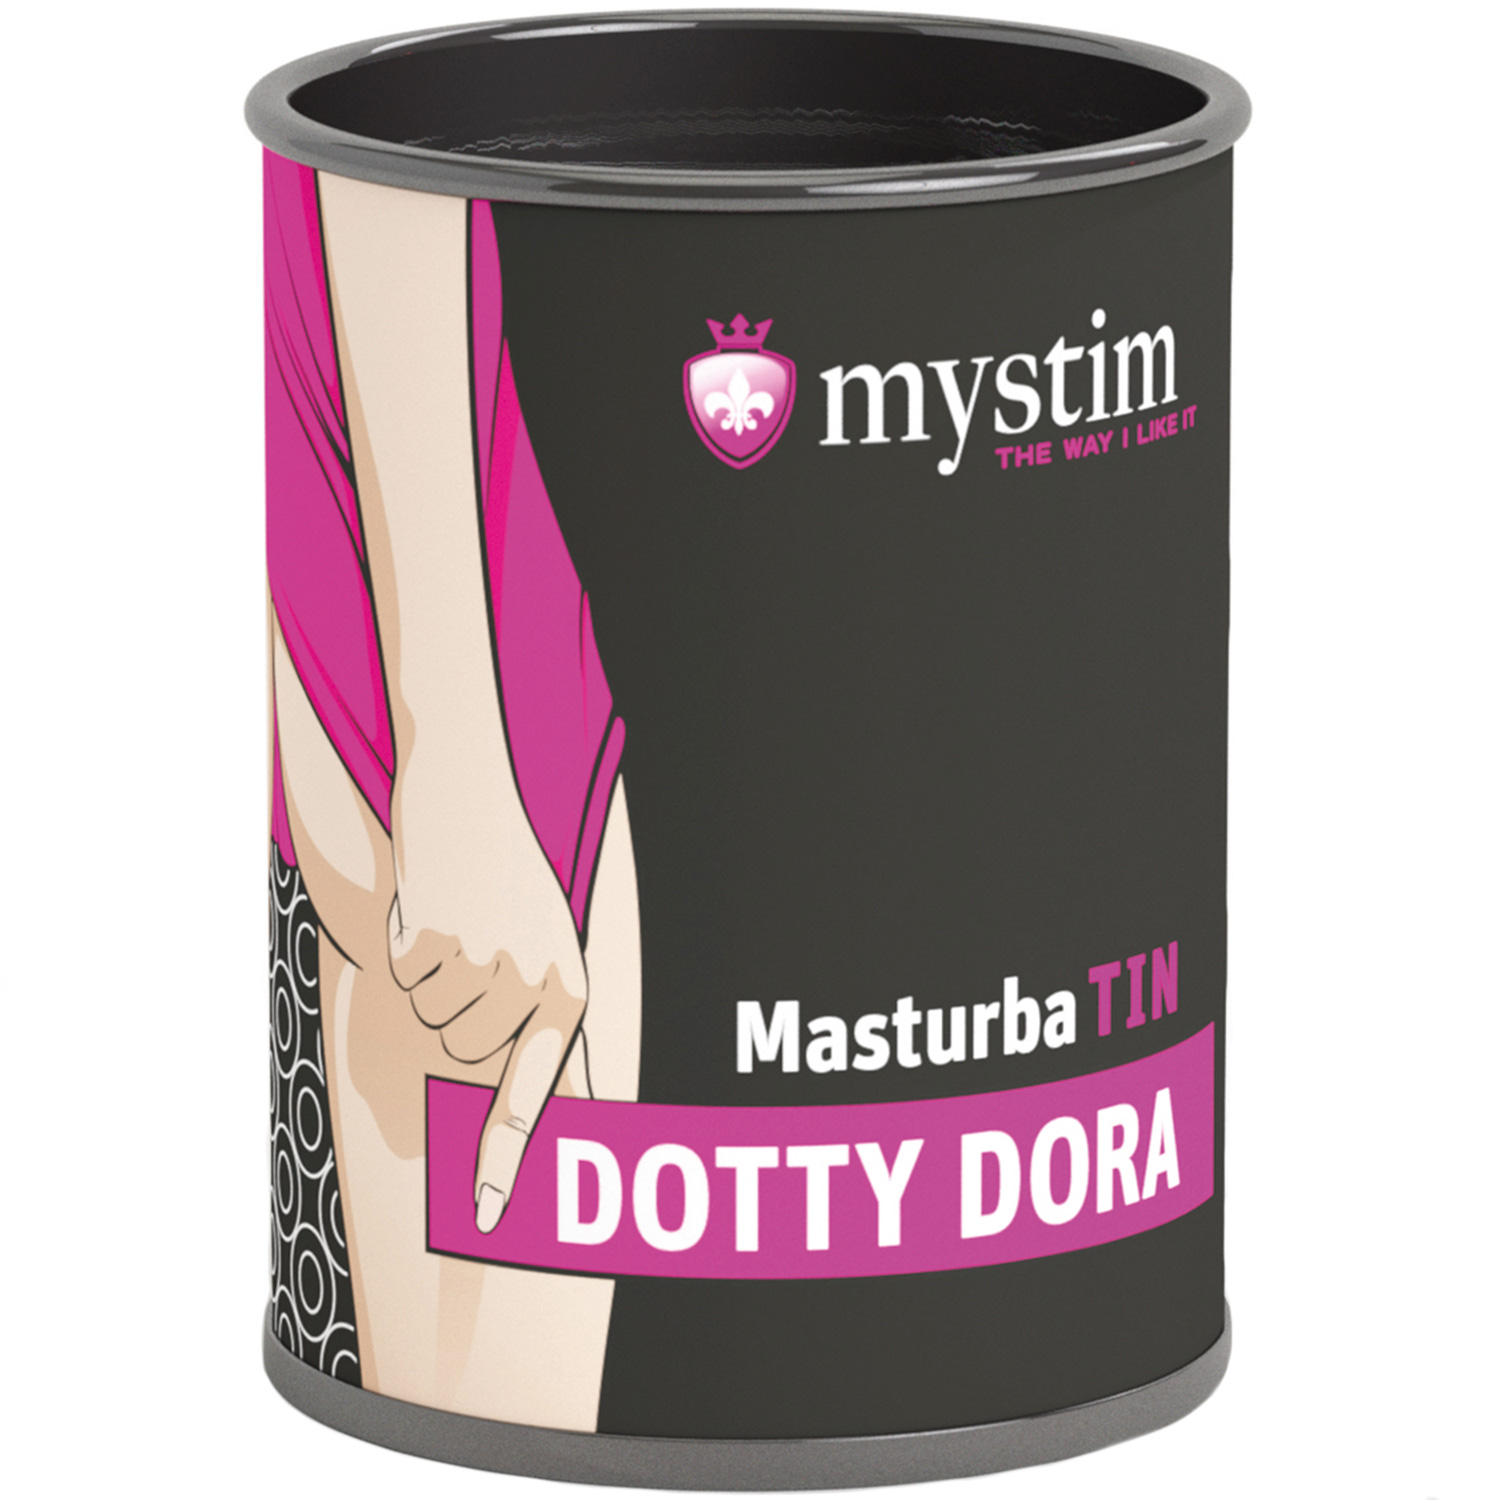 Mystim Dotty Dora MasturbaTIN - White thumbnail